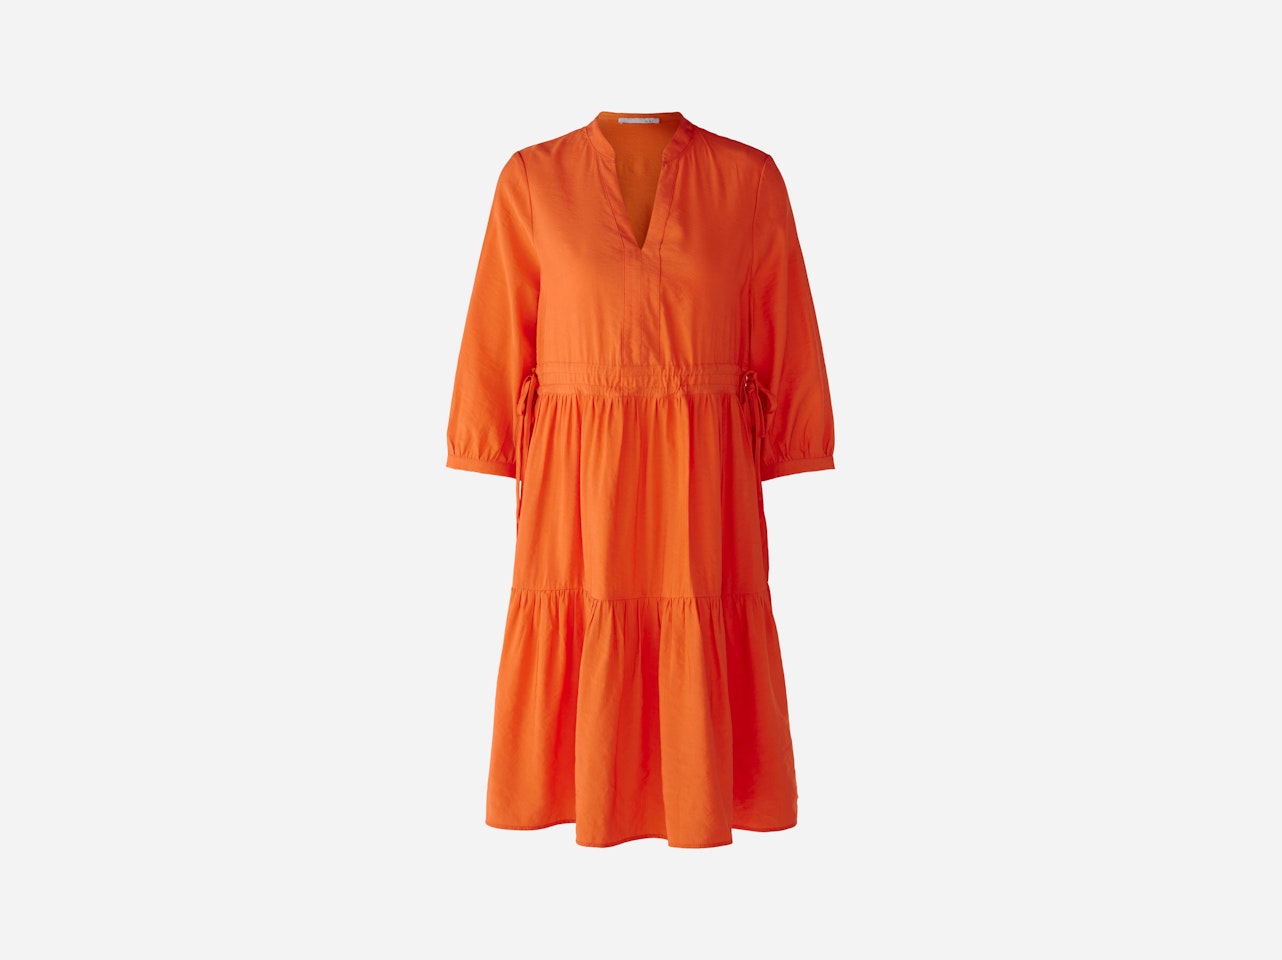 Bild 1 von Dress with volume sleeves in vermillion orange | Oui